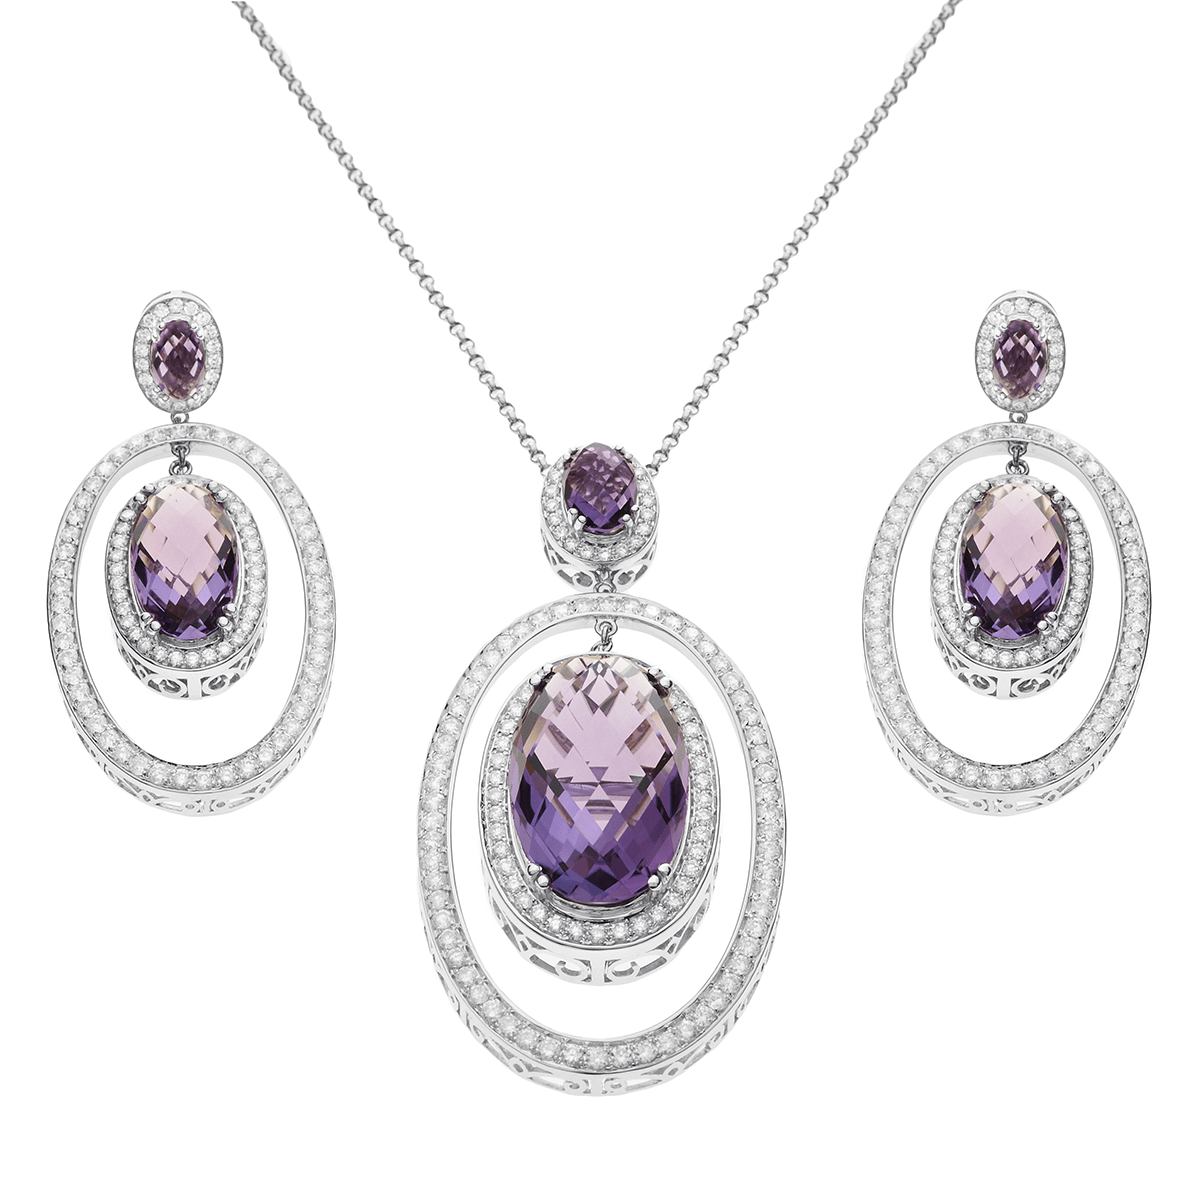 Queen Diana Jewelry Set